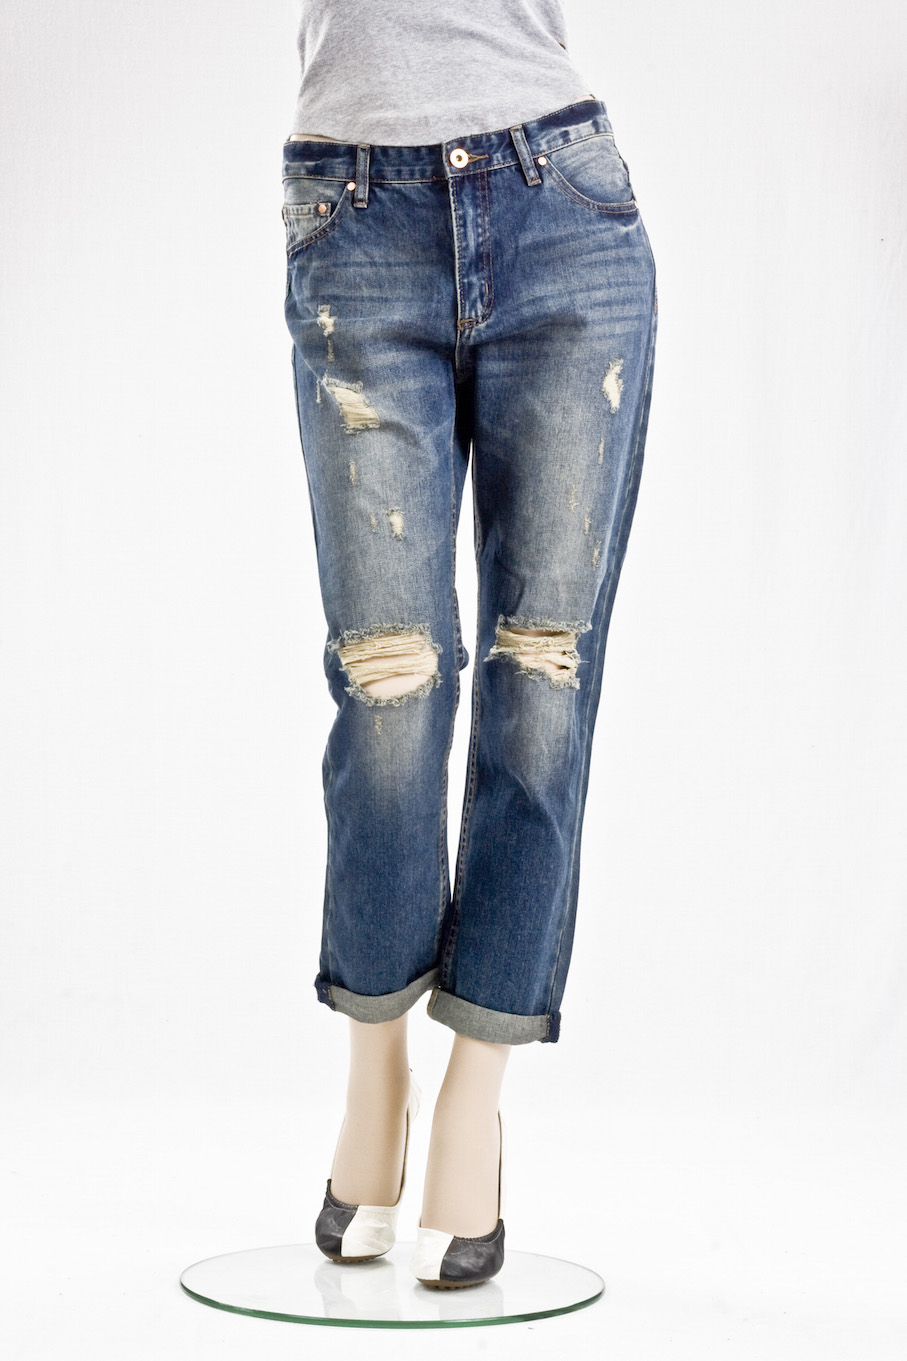 Женские джинсы American Bazi "Бойфренды" Vintage RJL 447 интернет-магазин Fashion Jeans